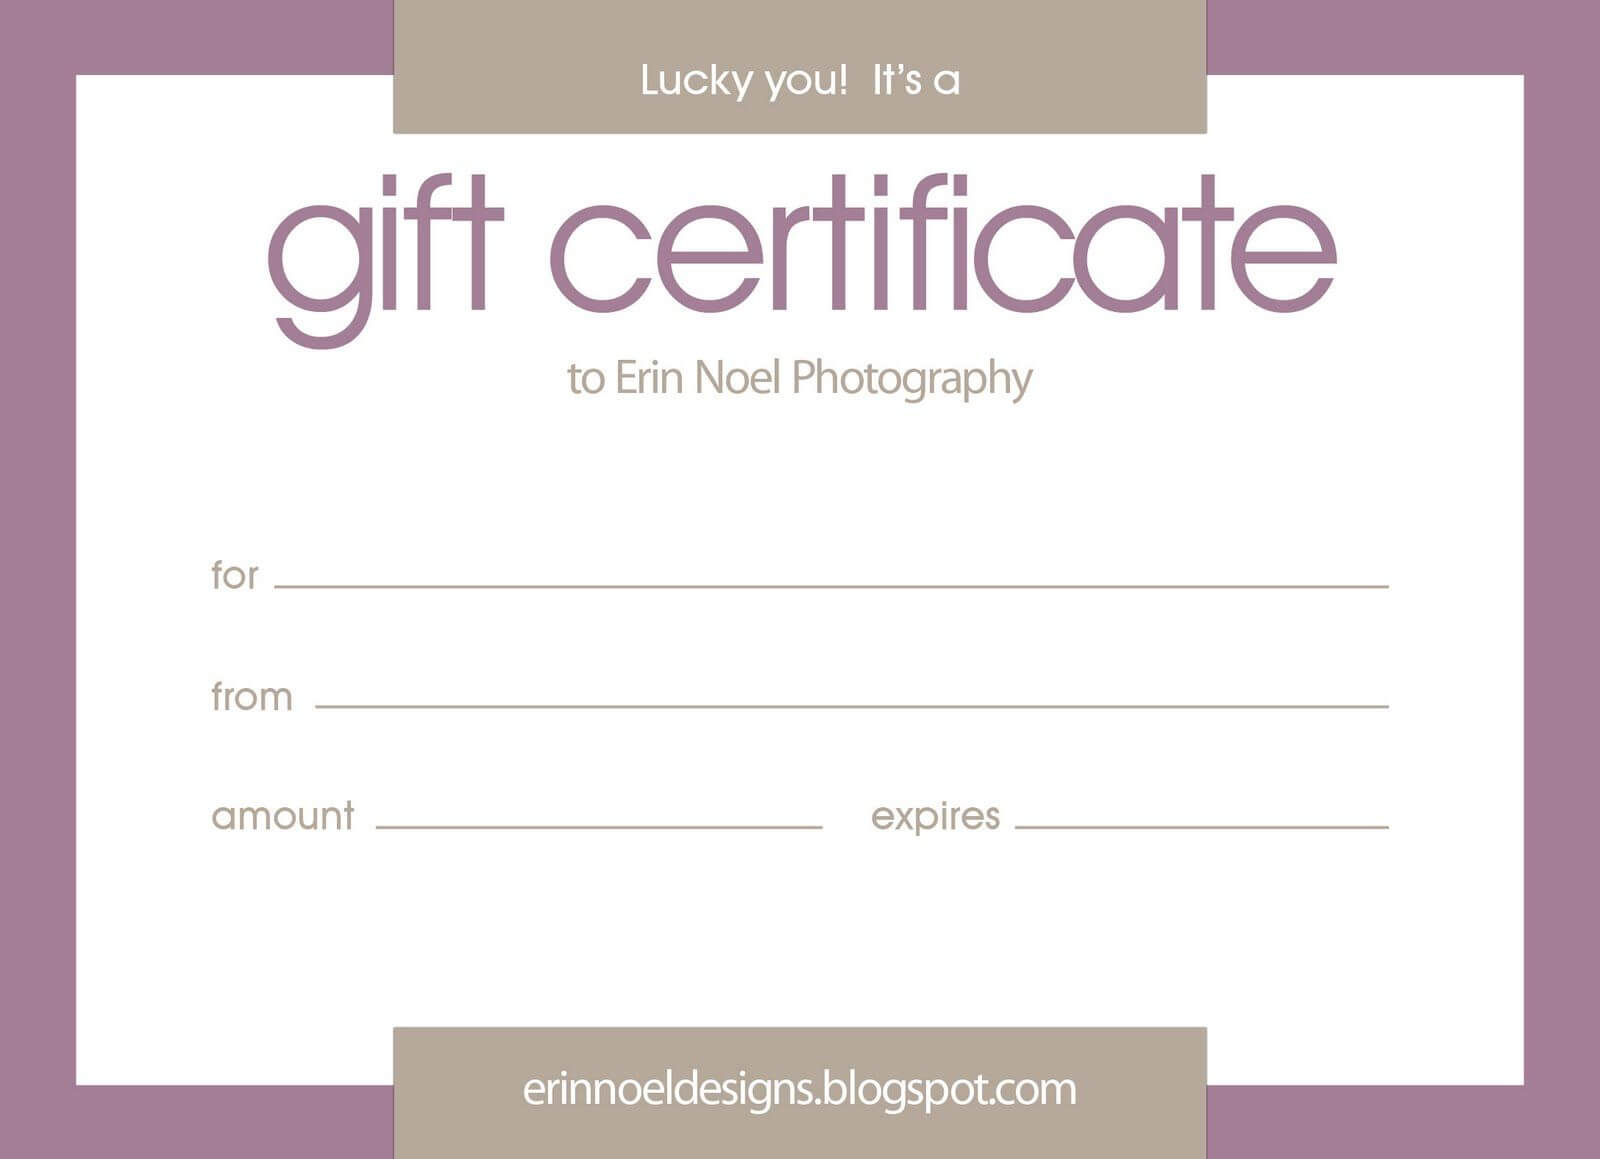 Erin Noel Designs: Gift Certificates! | Gift Certificate For Gift Certificate Template Indesign